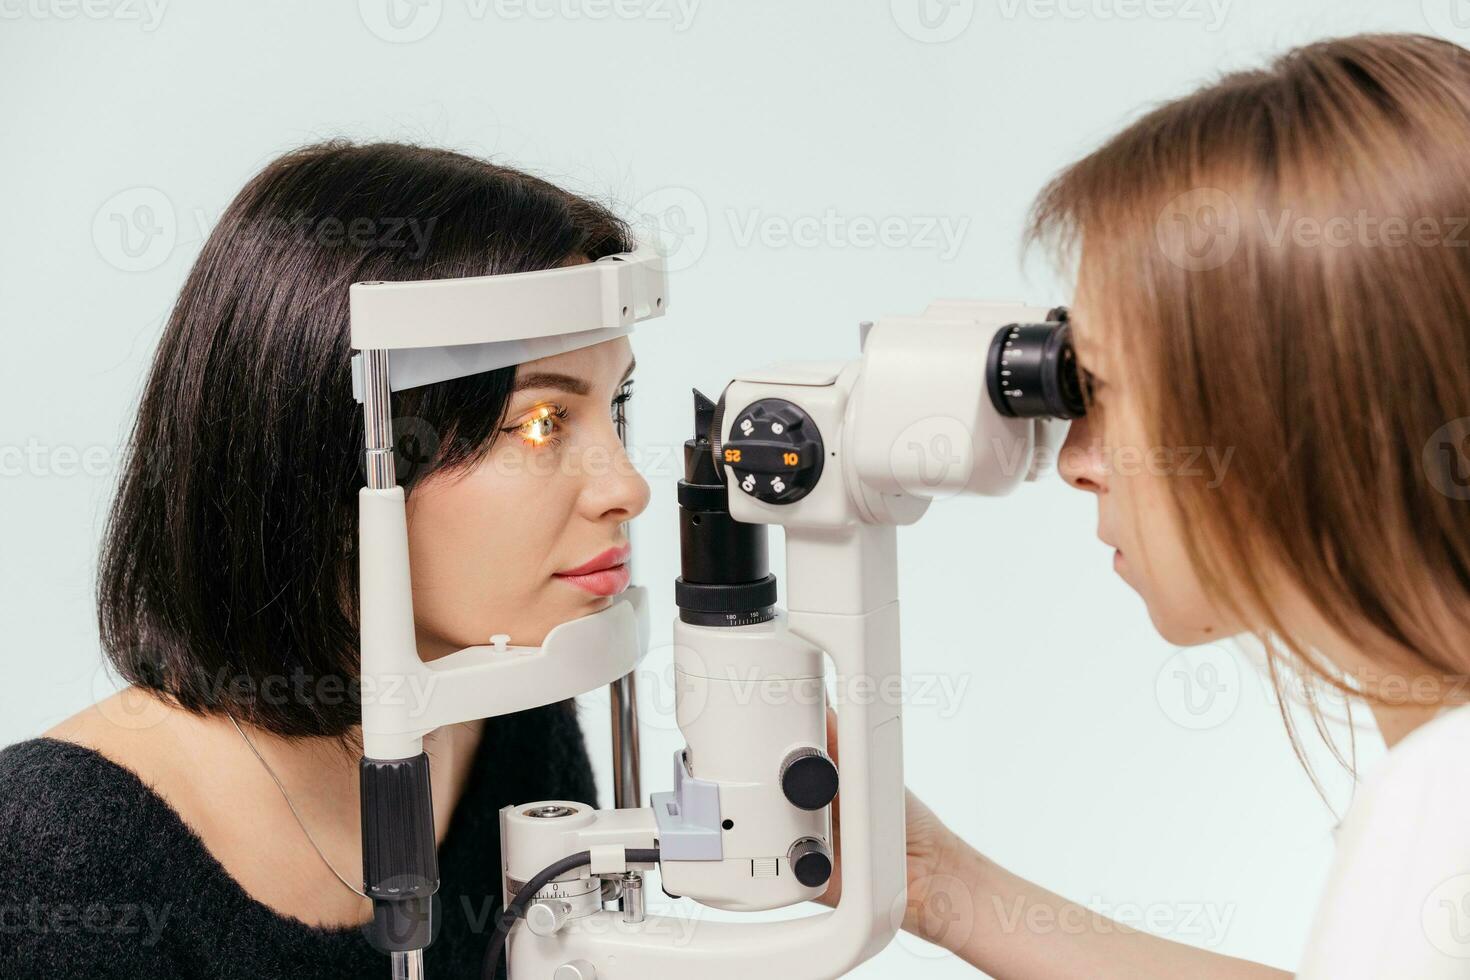 vrouw hebben visie test Aan een oogheelkunde diagnostisch visie testen apparatuur. dokter aan het doen oog test met niet contact tonometer, controle visie Bij optisch kliniek foto